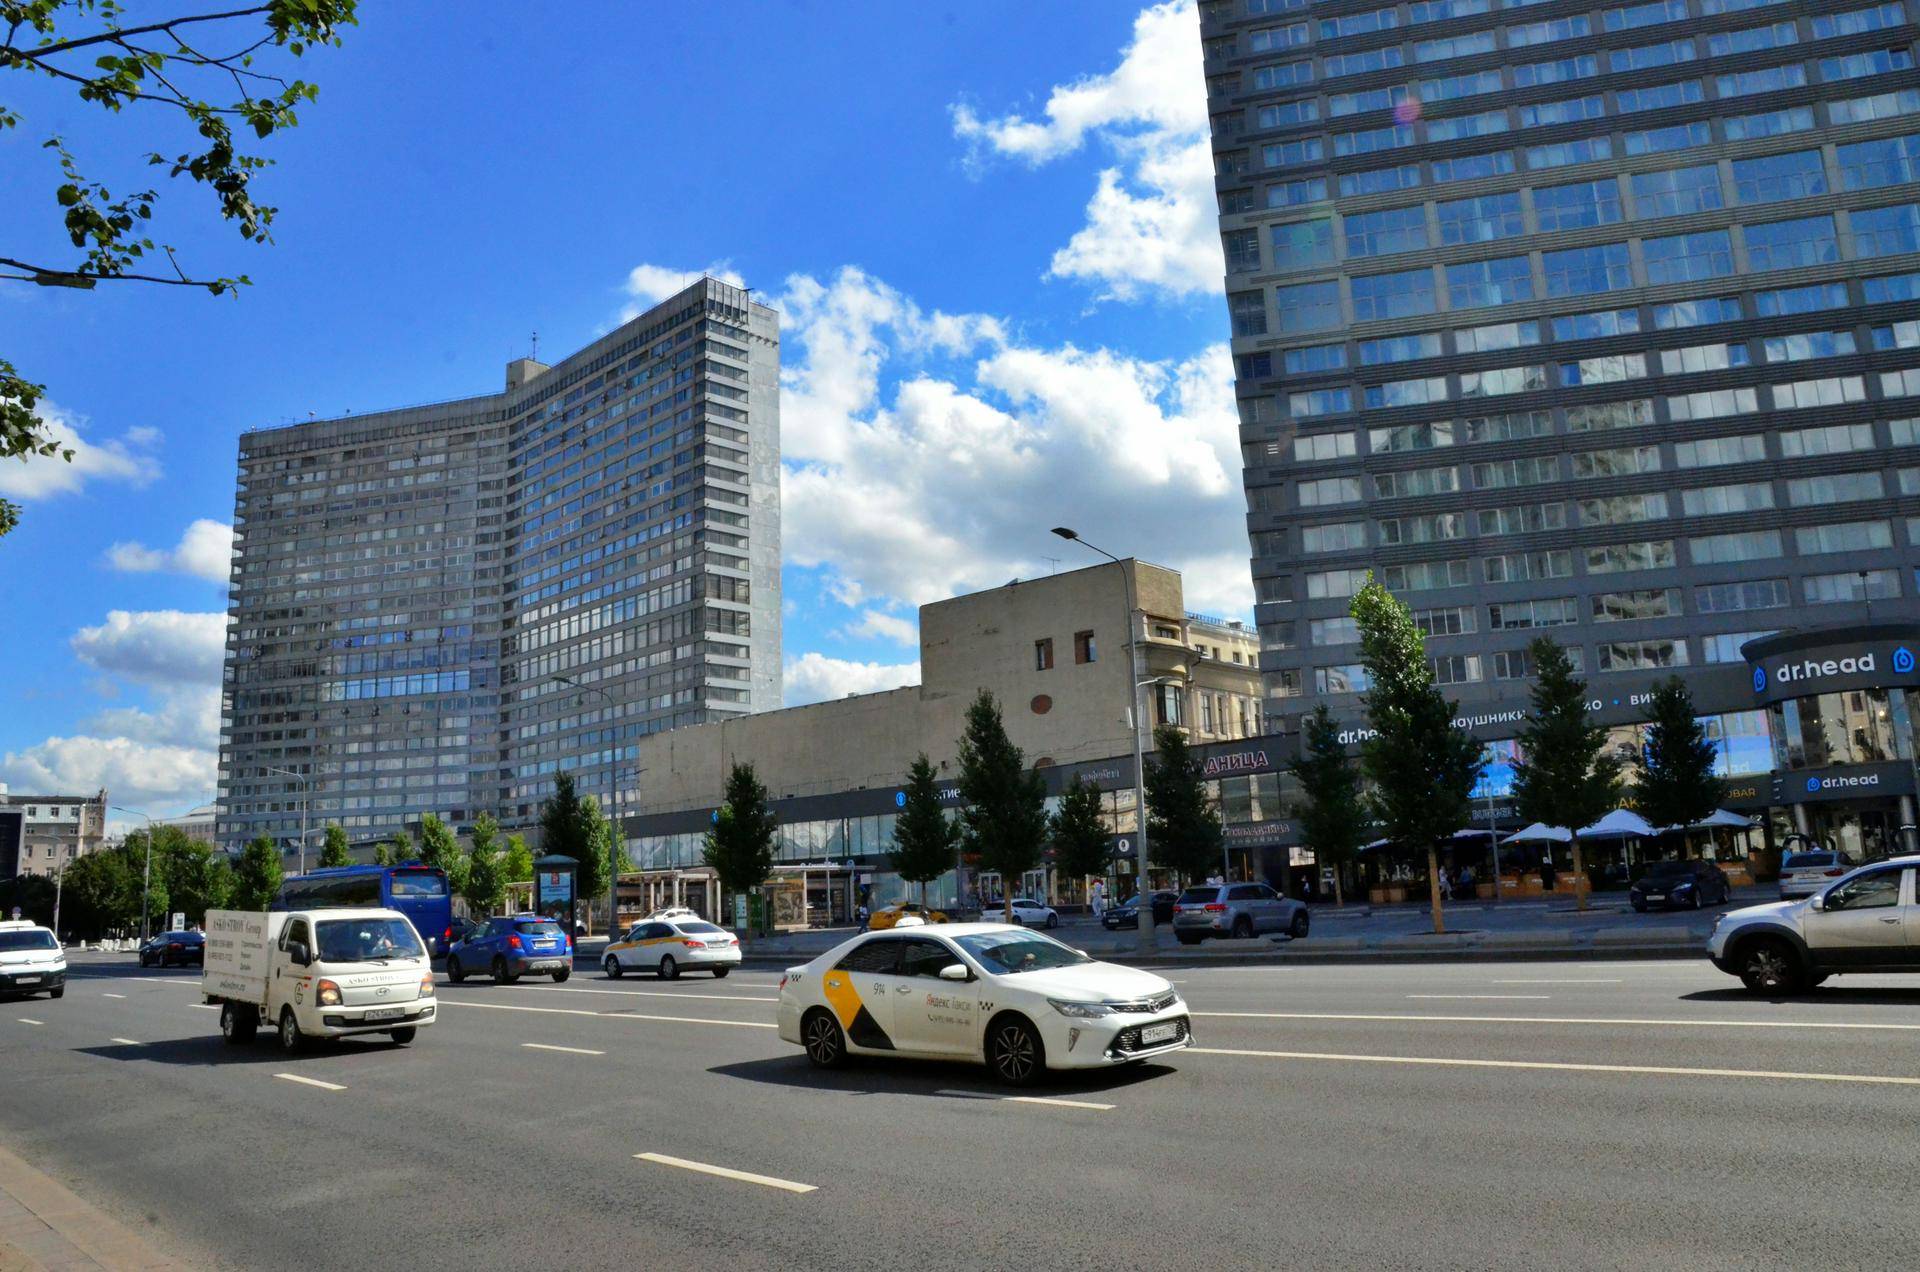 новый арбат 36 здание правительства москвы